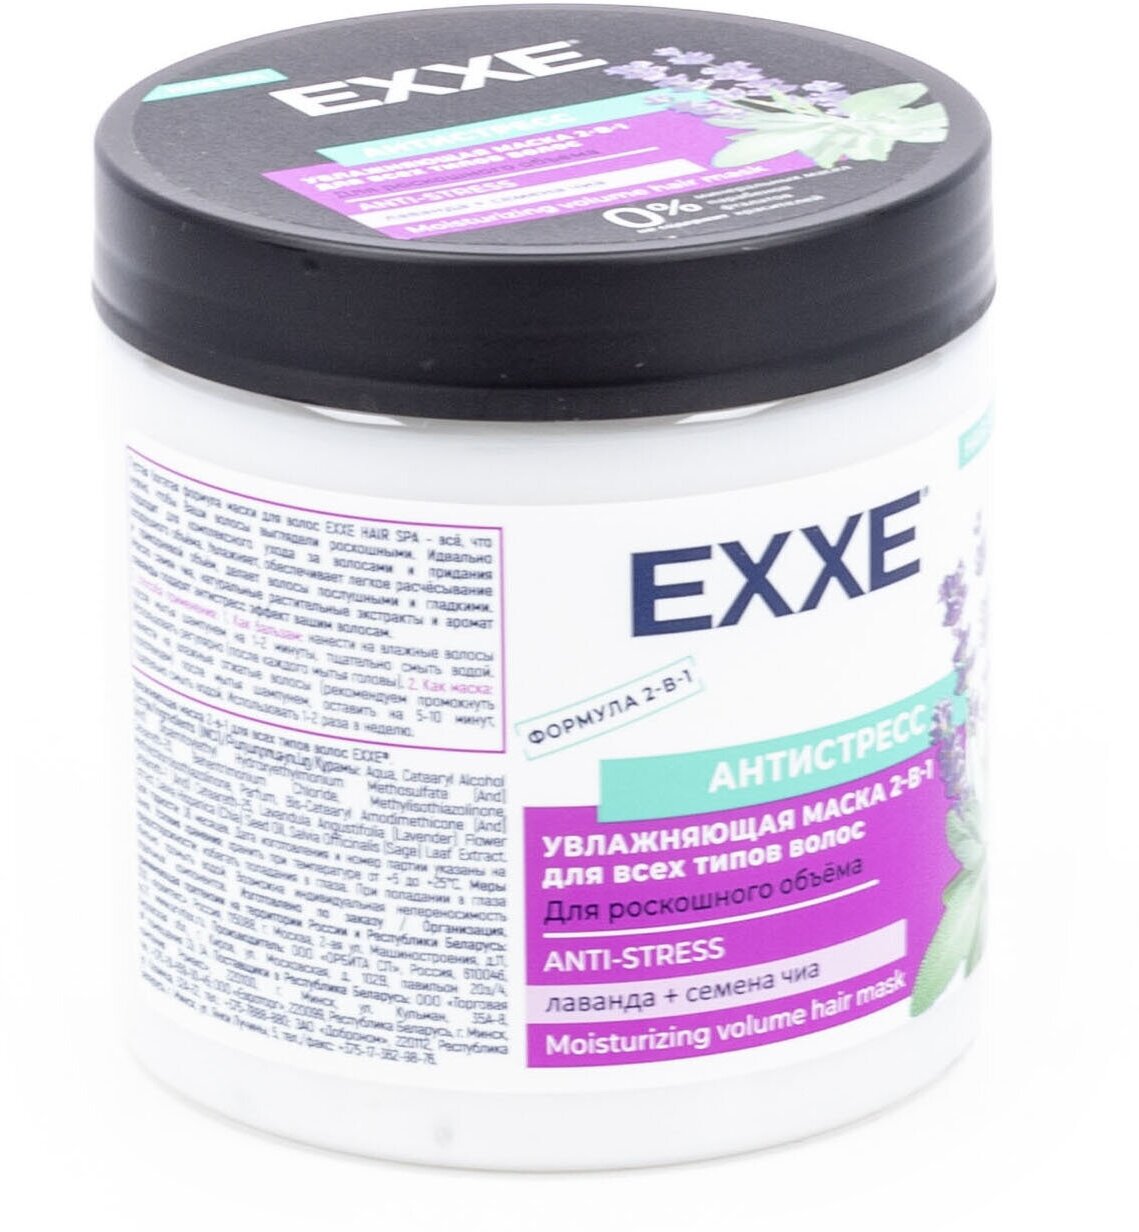 Маска для волос Exxe Антистресс 2в1 увлажняющая для всех типов волос, 500 мл - фото №8